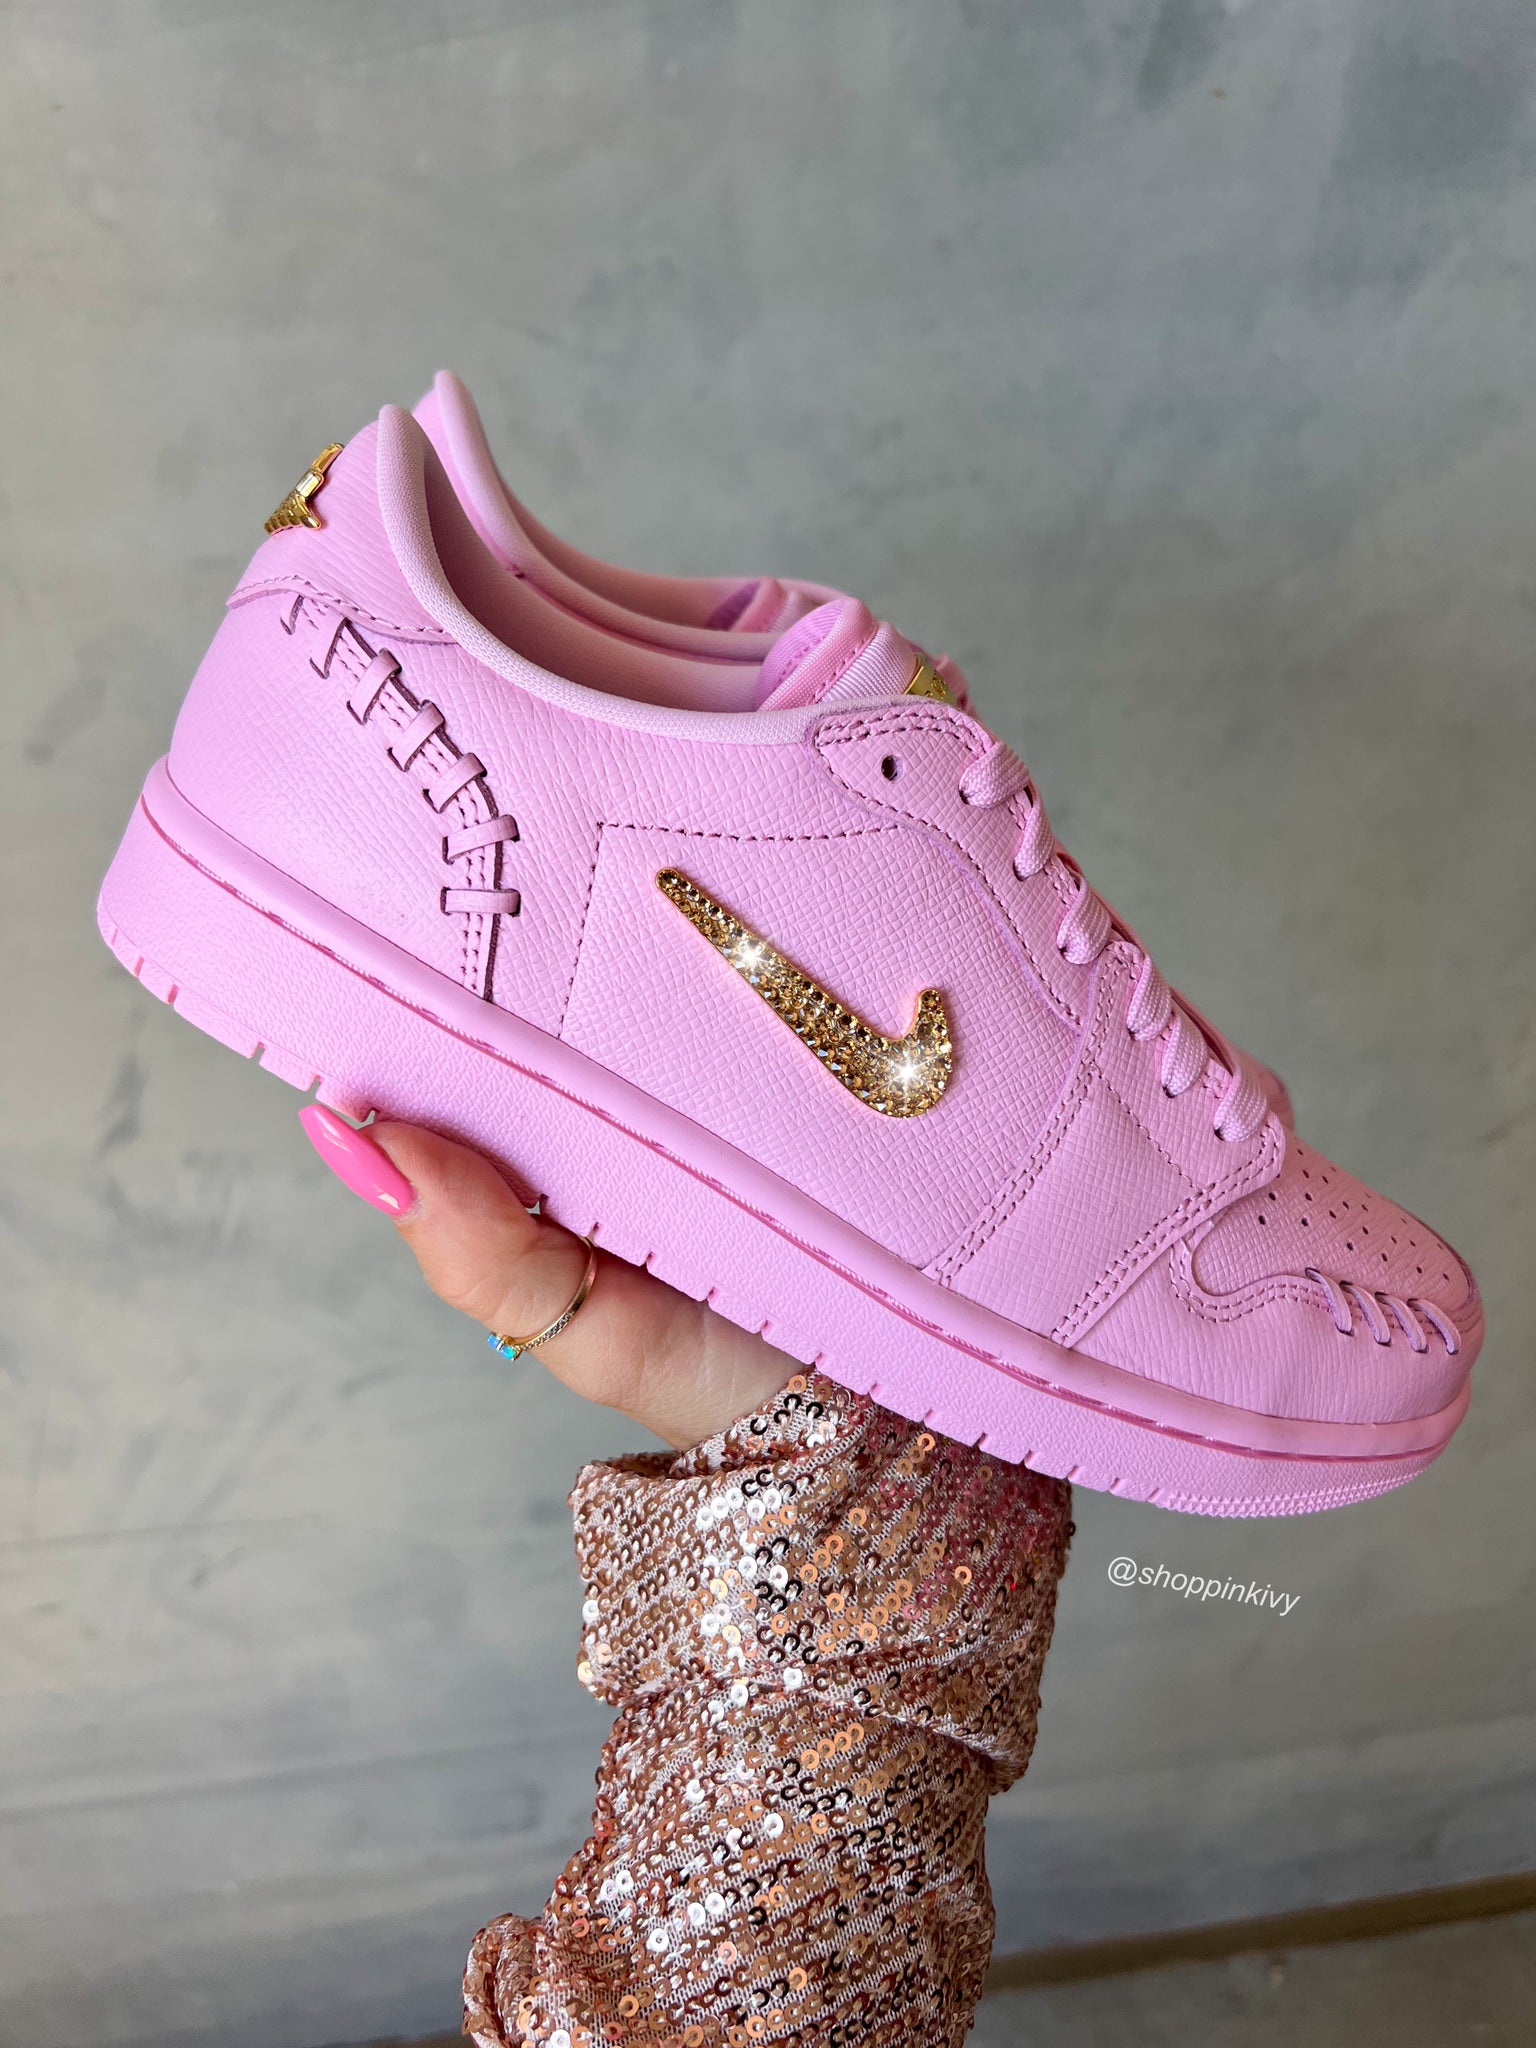 Pink Swarovski Women’s Air Jordan 1 Low Shoes